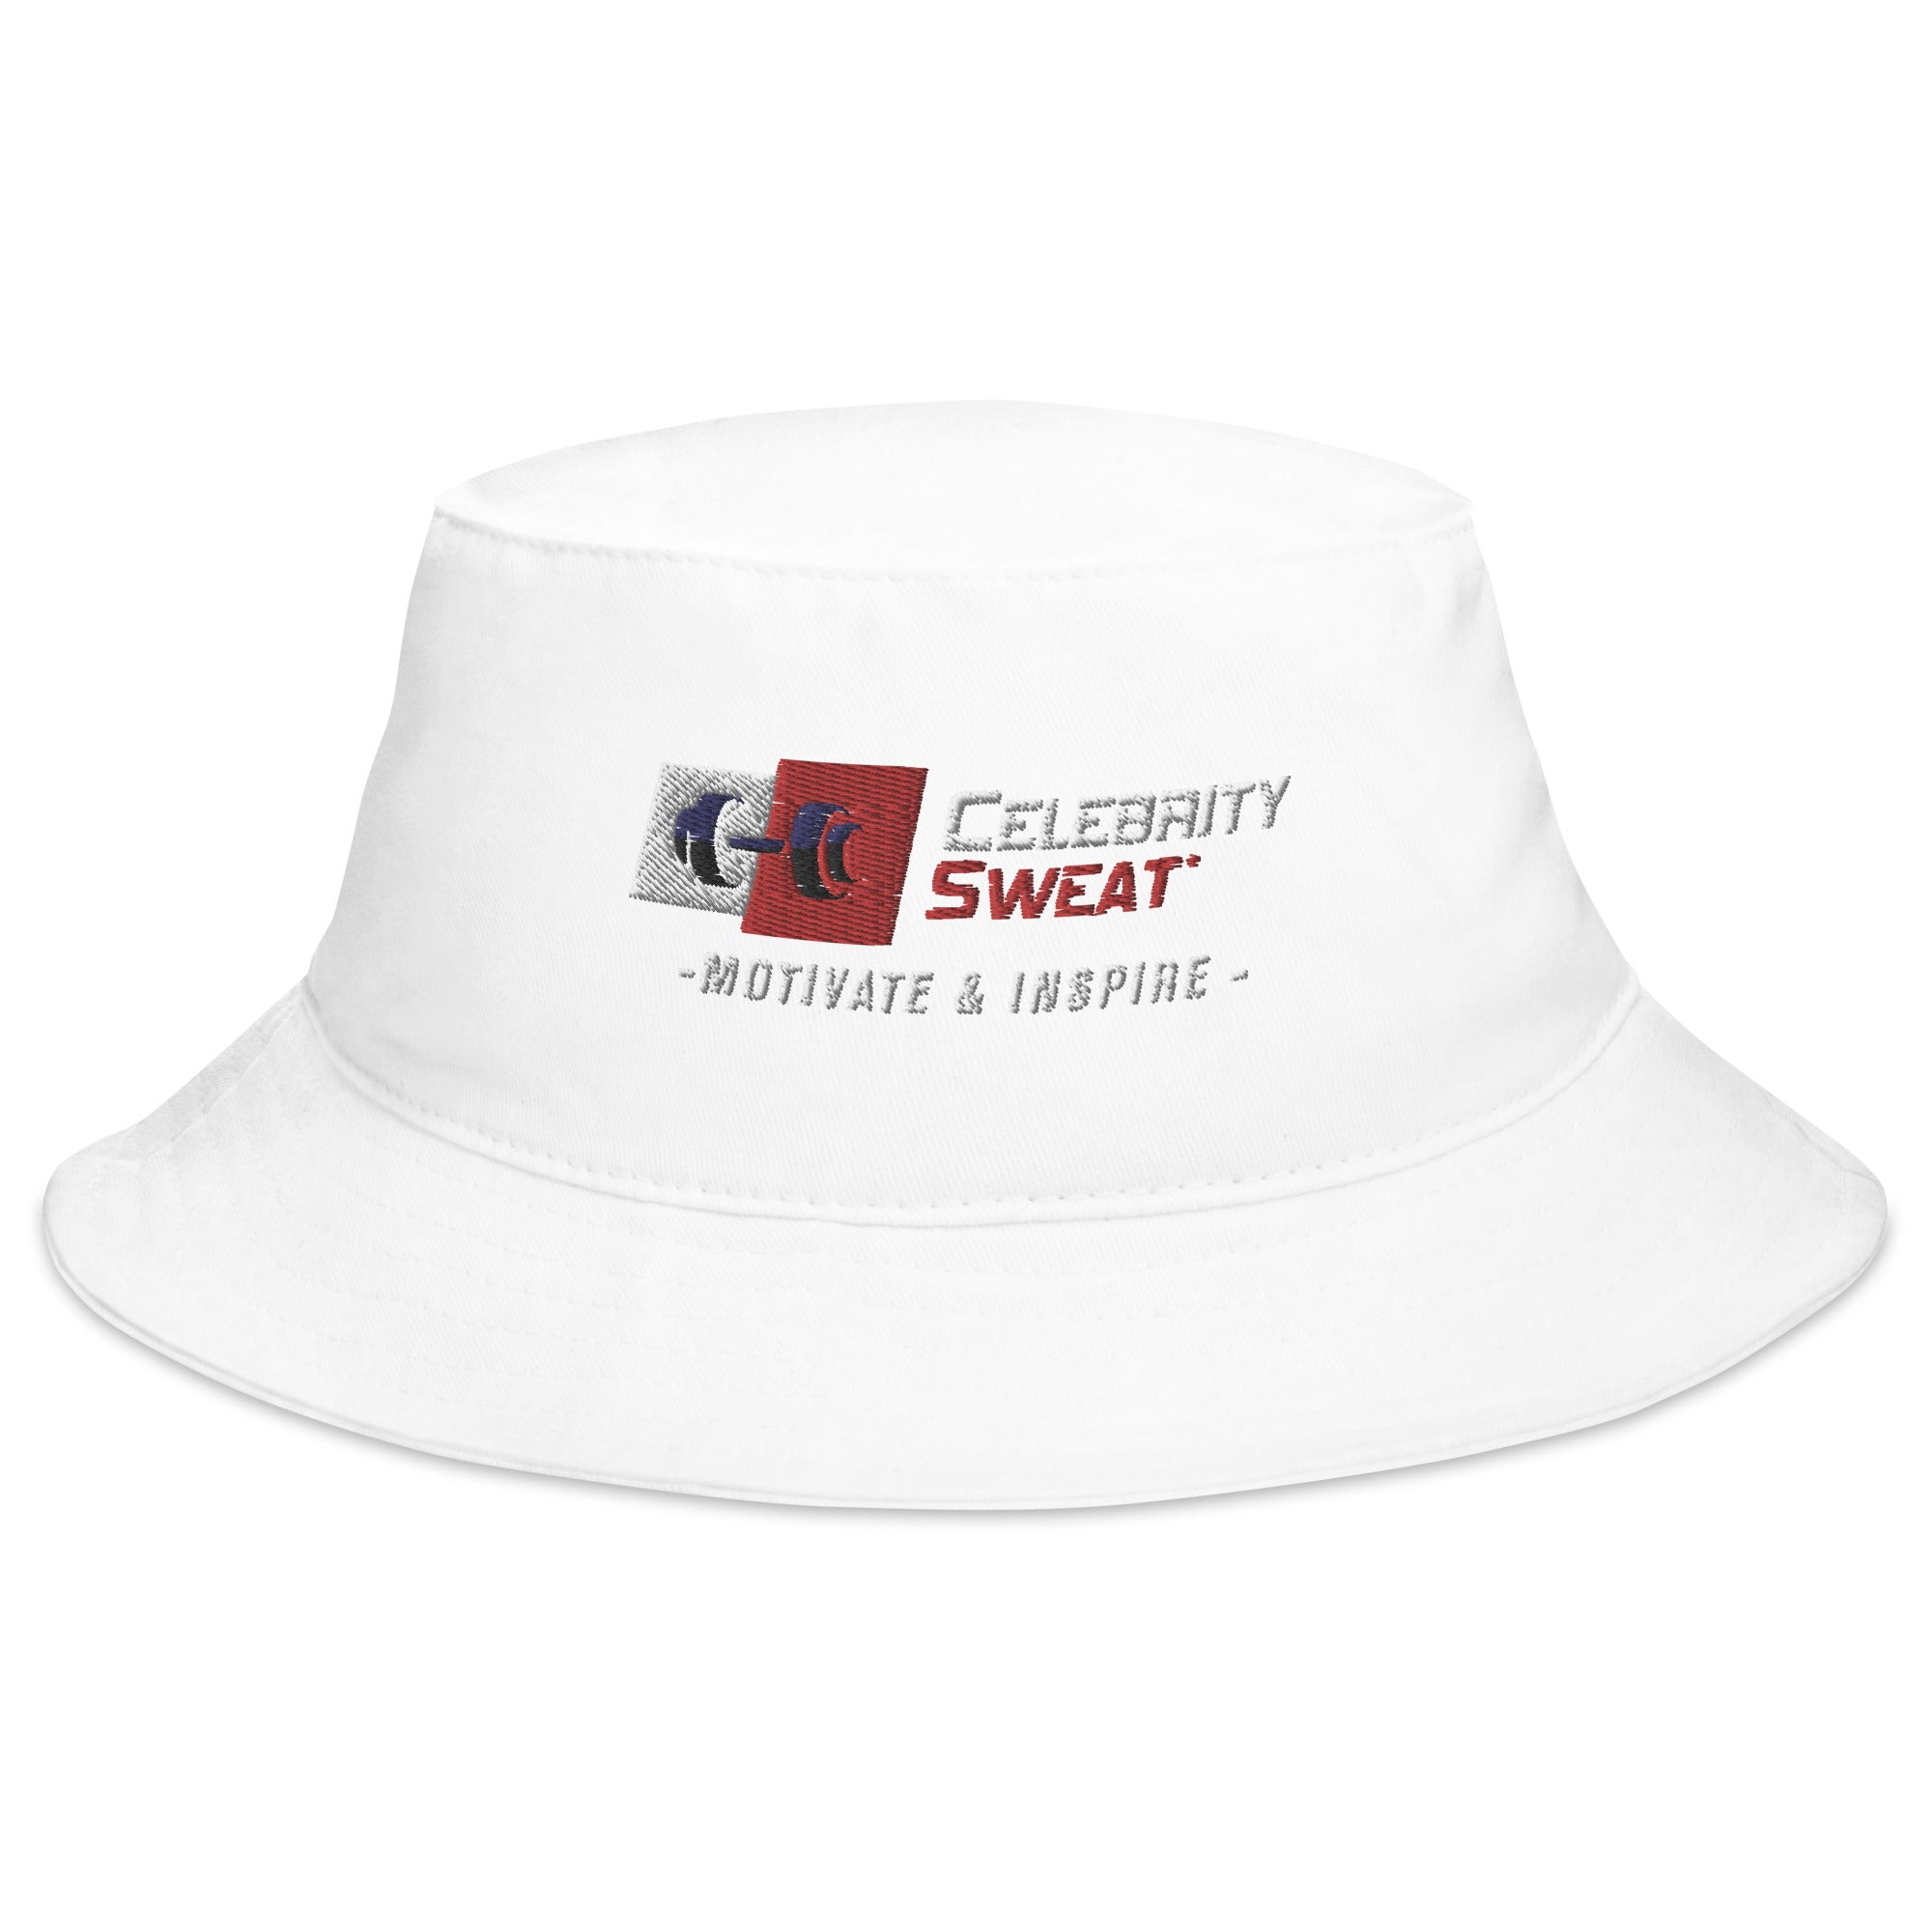 Celebrity Sweat Bucket Hat